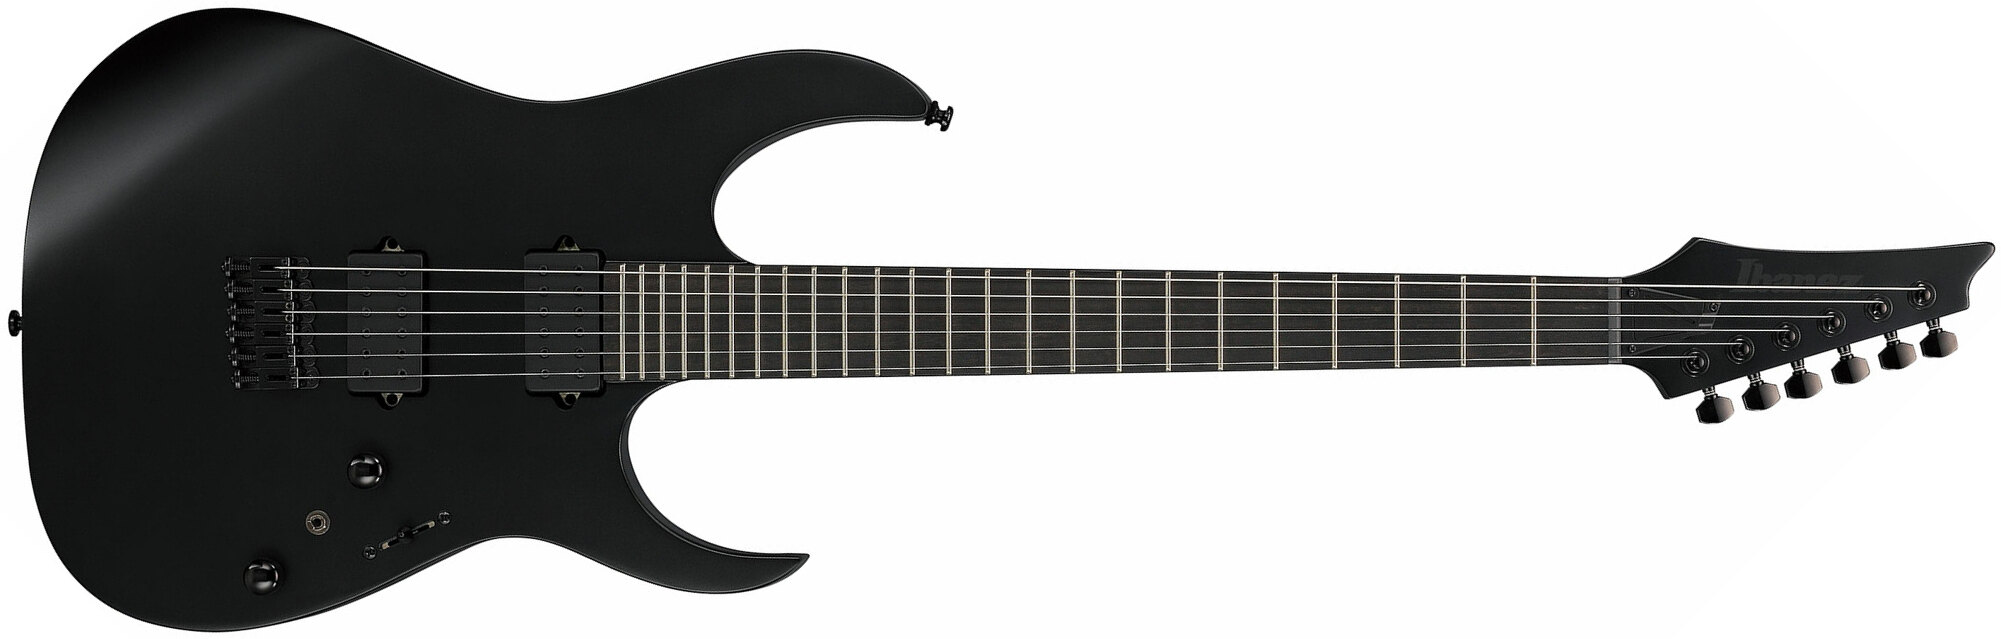 Ibanez Rgrtb621 Bkf Axion Label Hh Dimarzio Ht Eb - Black Flat - Elektrische gitaar in Str-vorm - Main picture